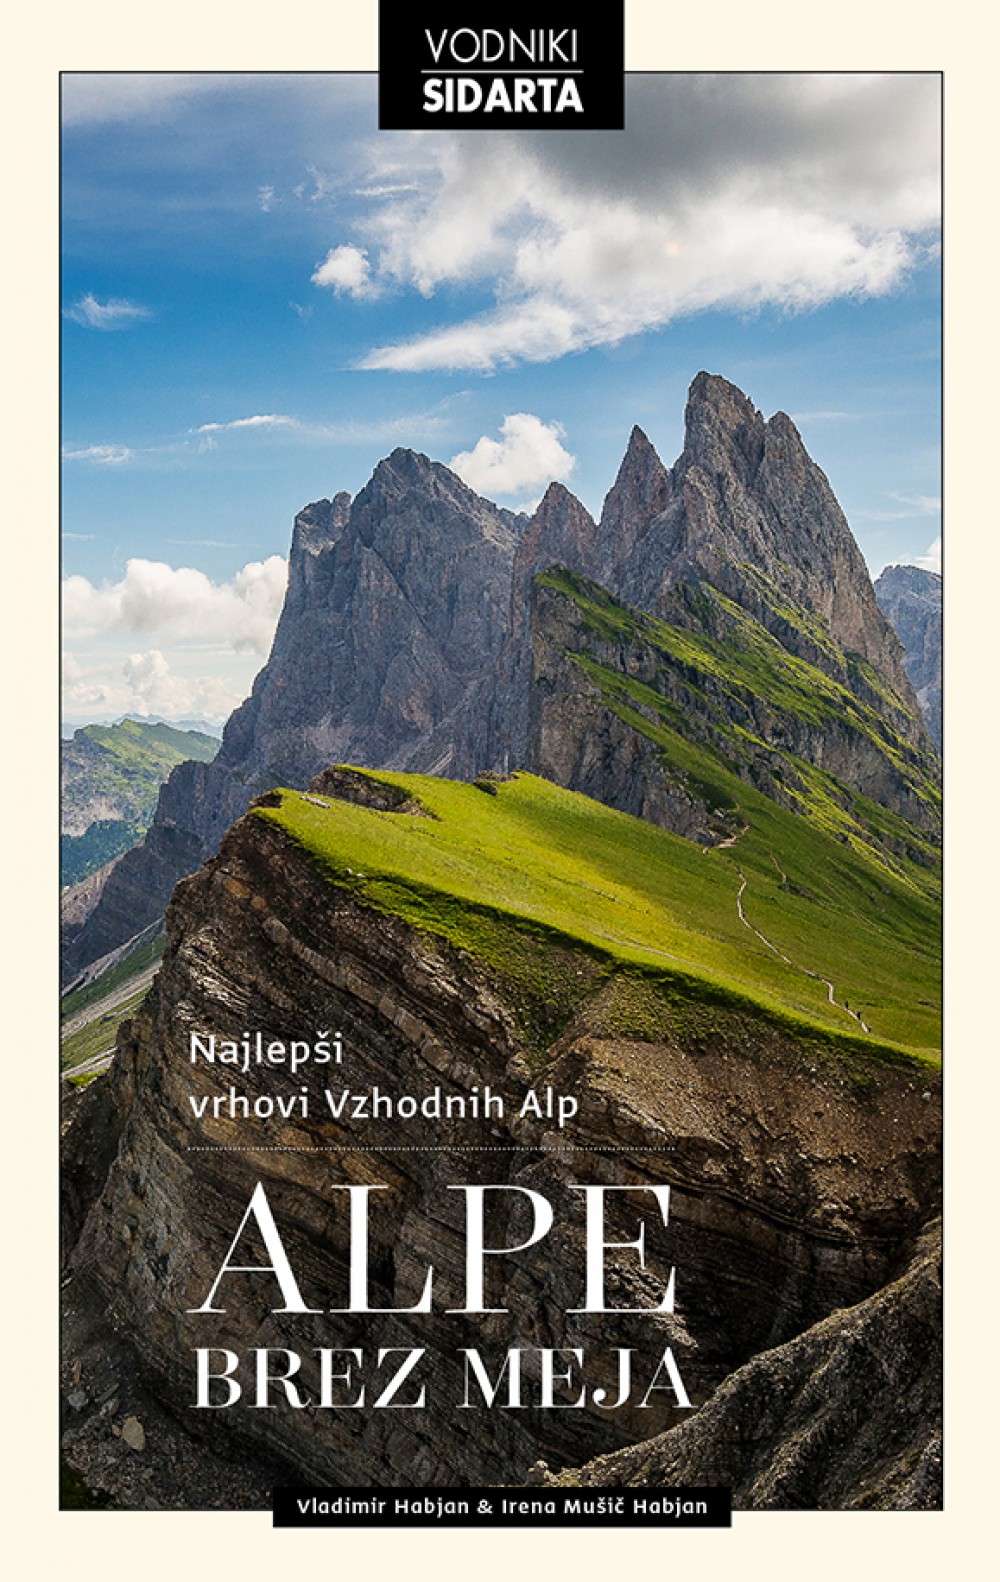 Predstavitev knjige Alpe brez meja